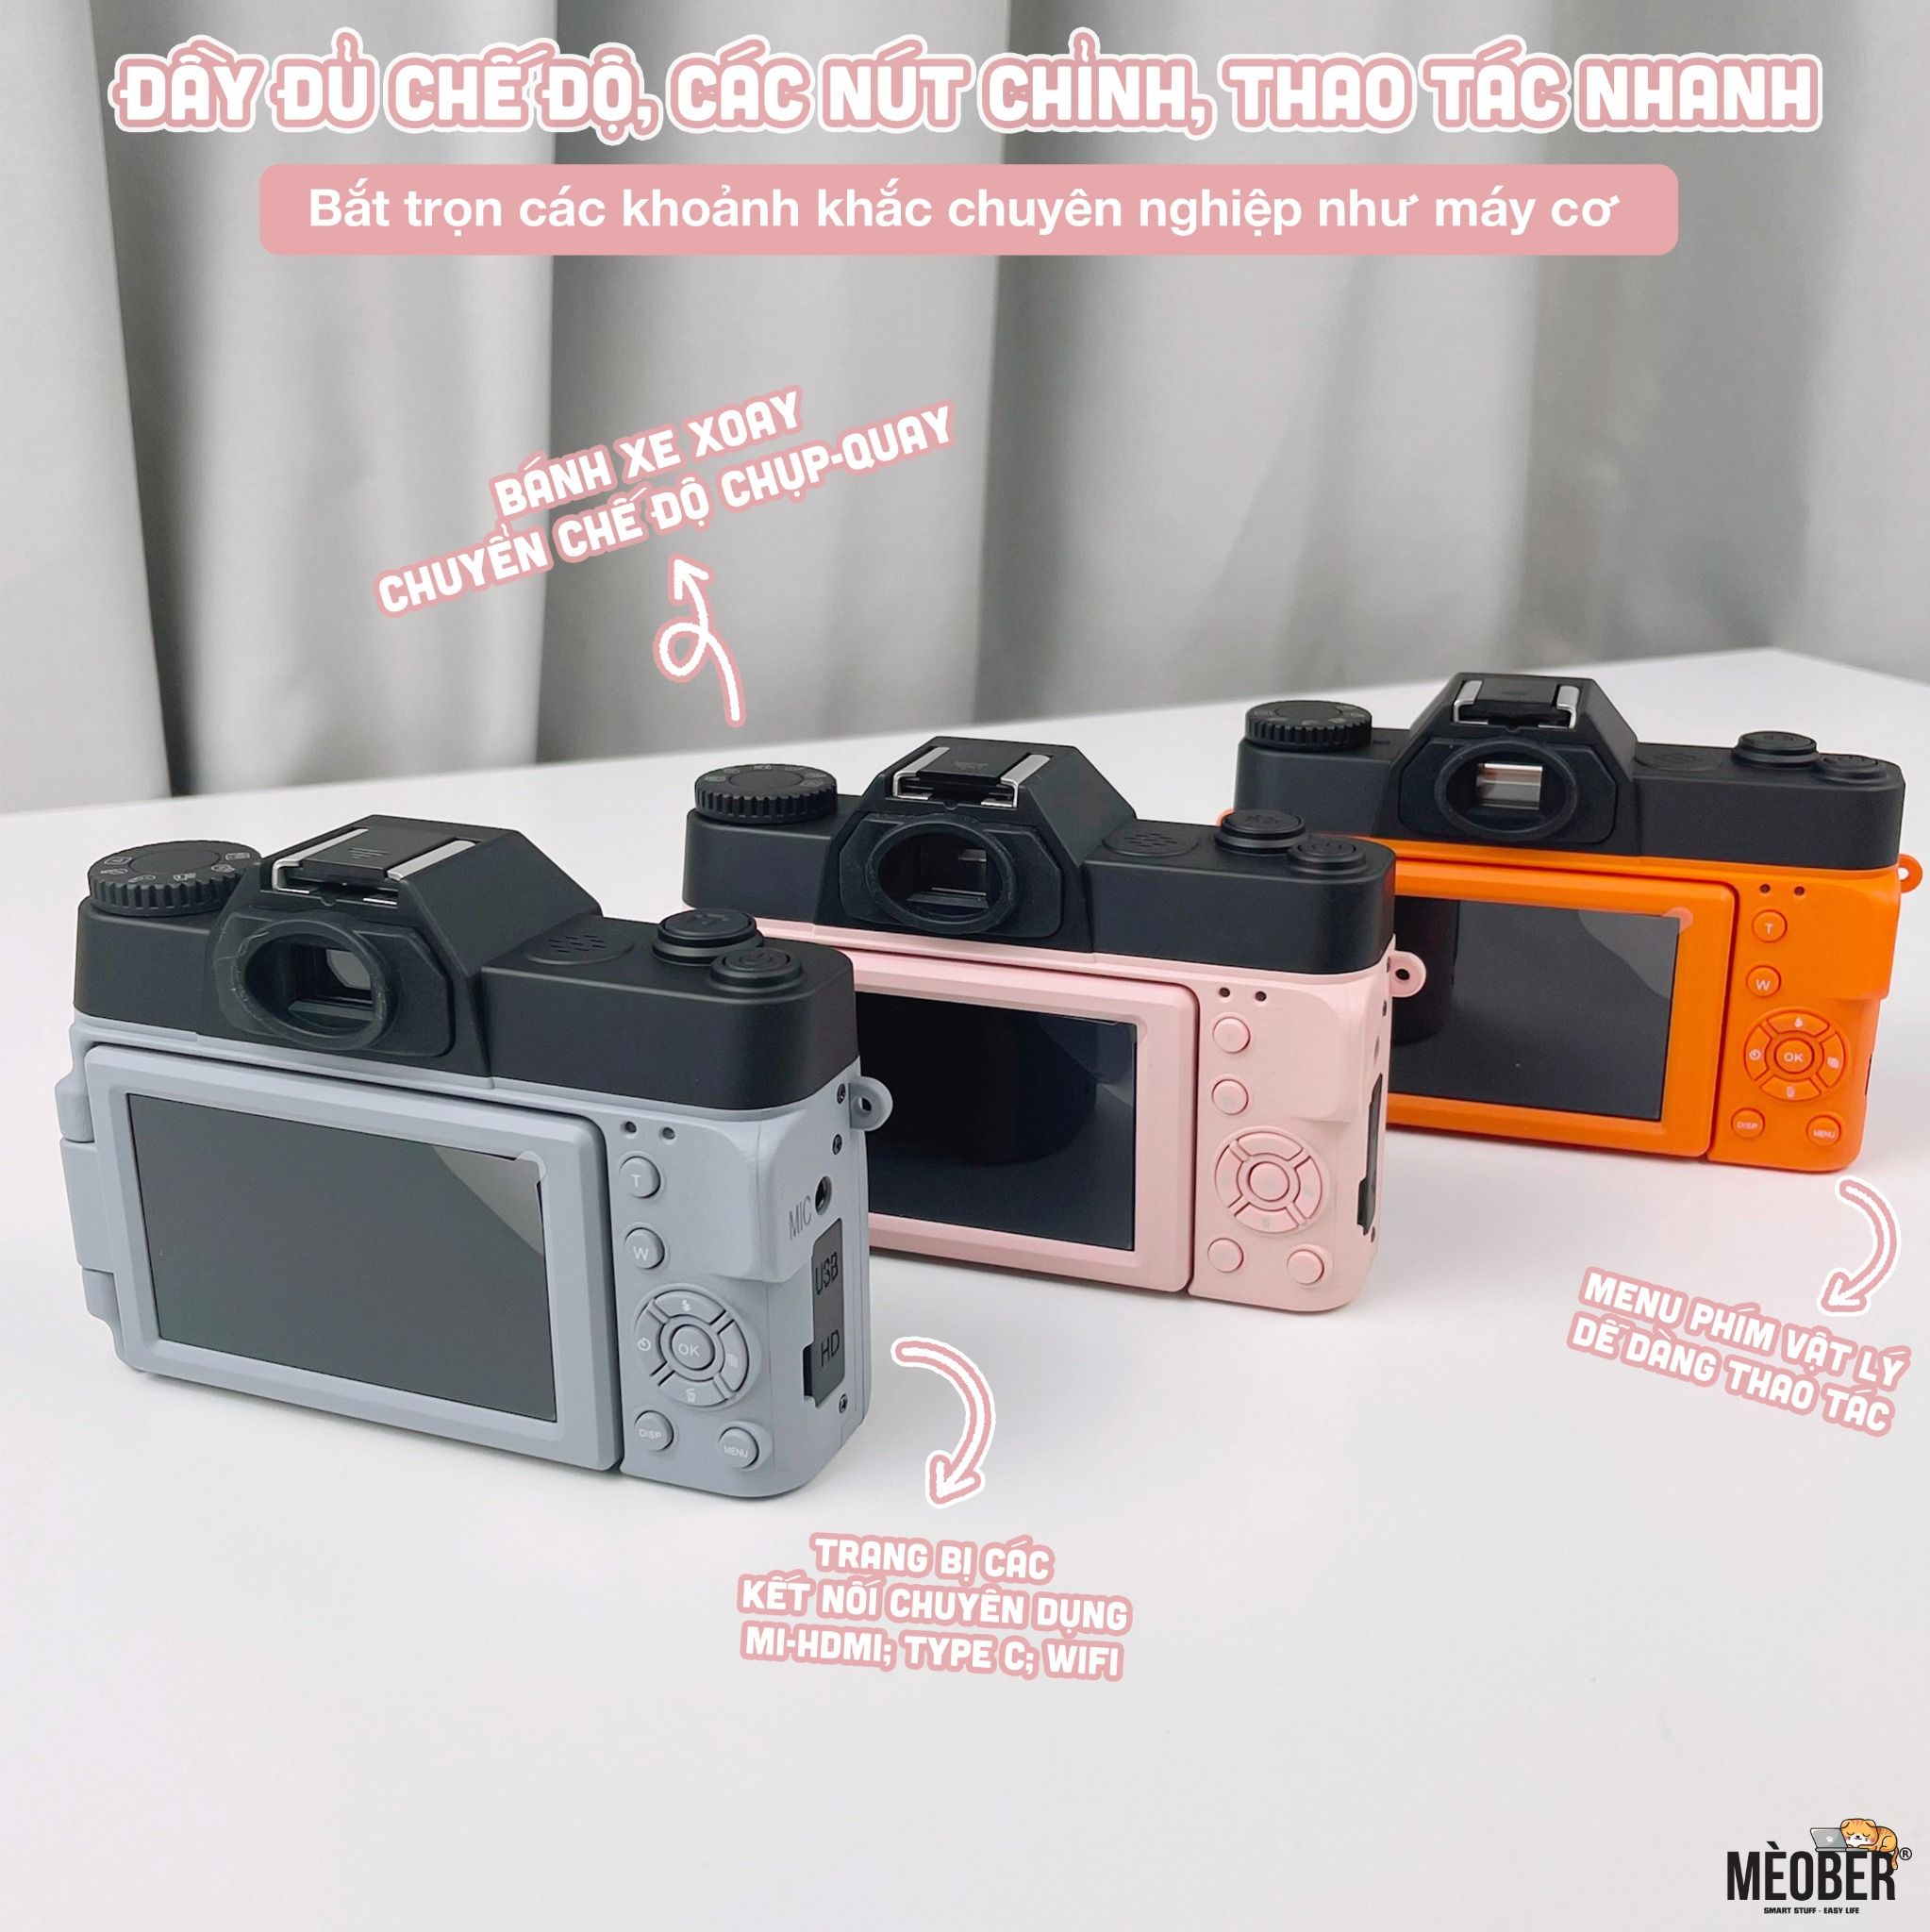  [Tặng thẻ nhớ] Máy Chụp Hình Retro 48MP Quay phim 4K UltraHD  - giả lập màu phim, quay video slow-mo, chuyển hình nhanh qua smartphone 